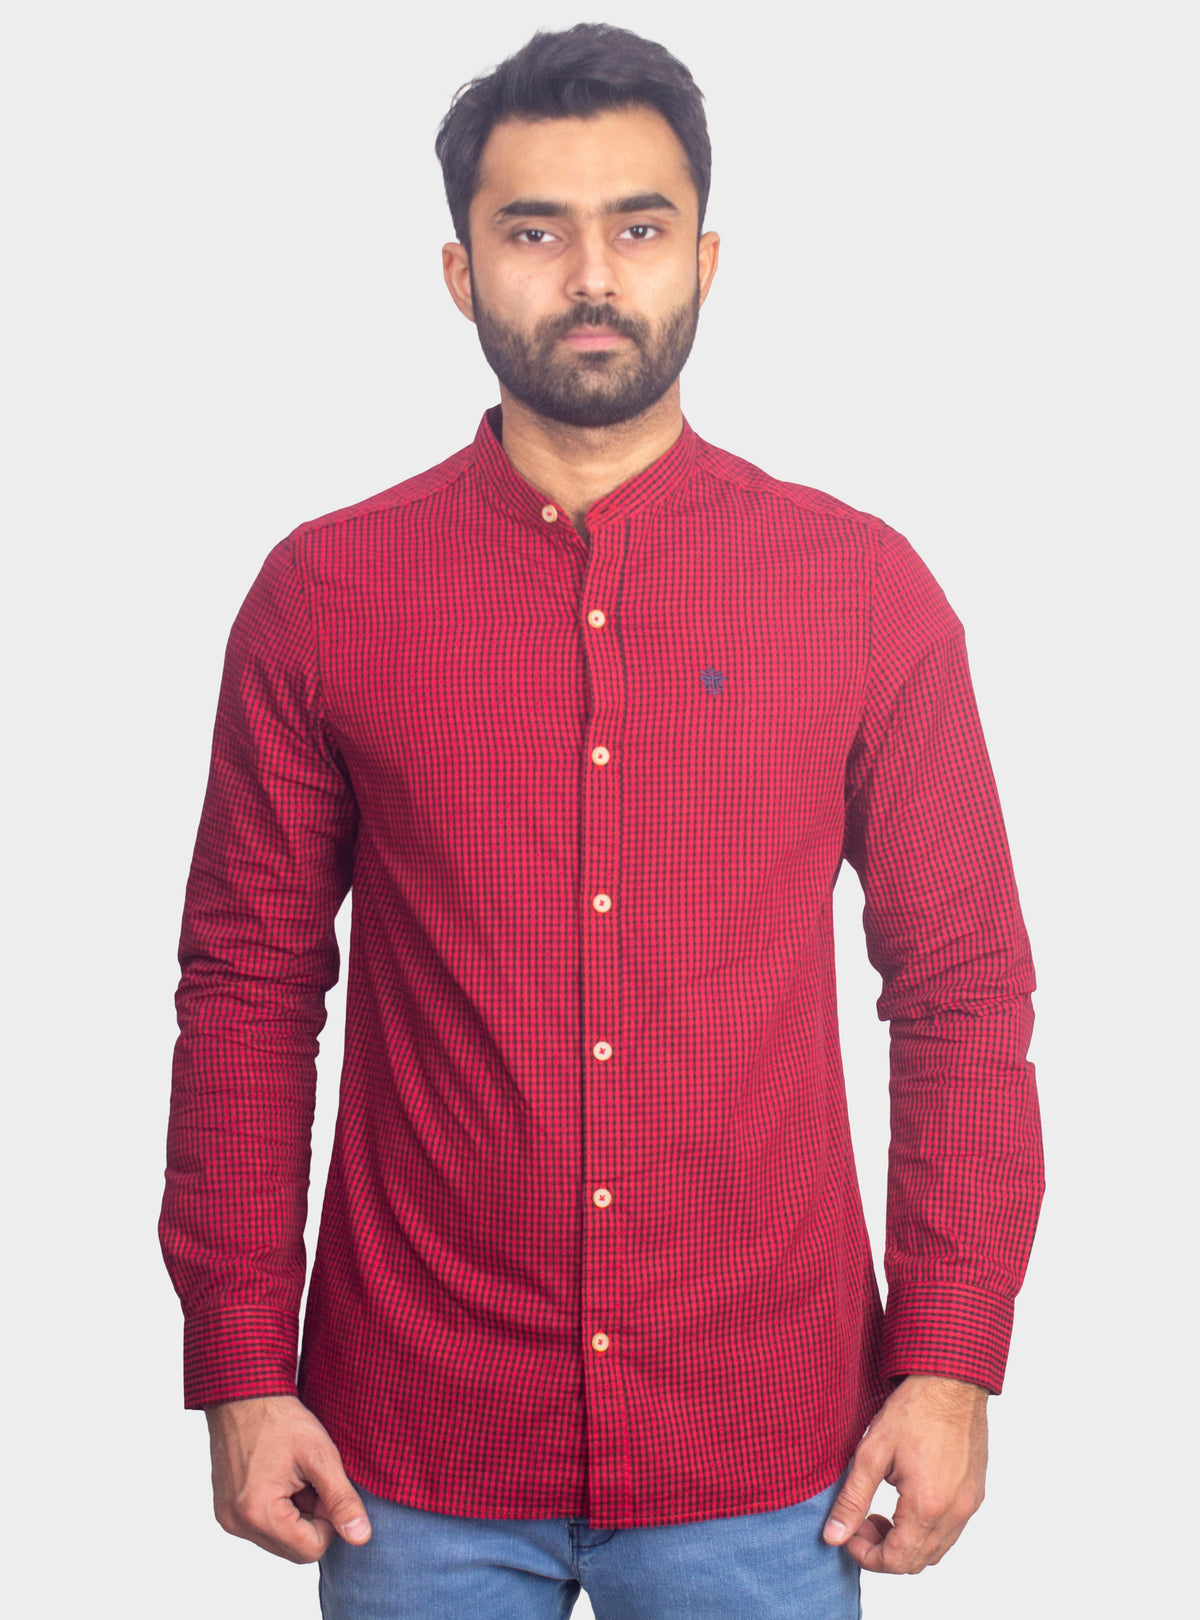 Checkered Casual Shirt - Shc-1443 B/Red Chk